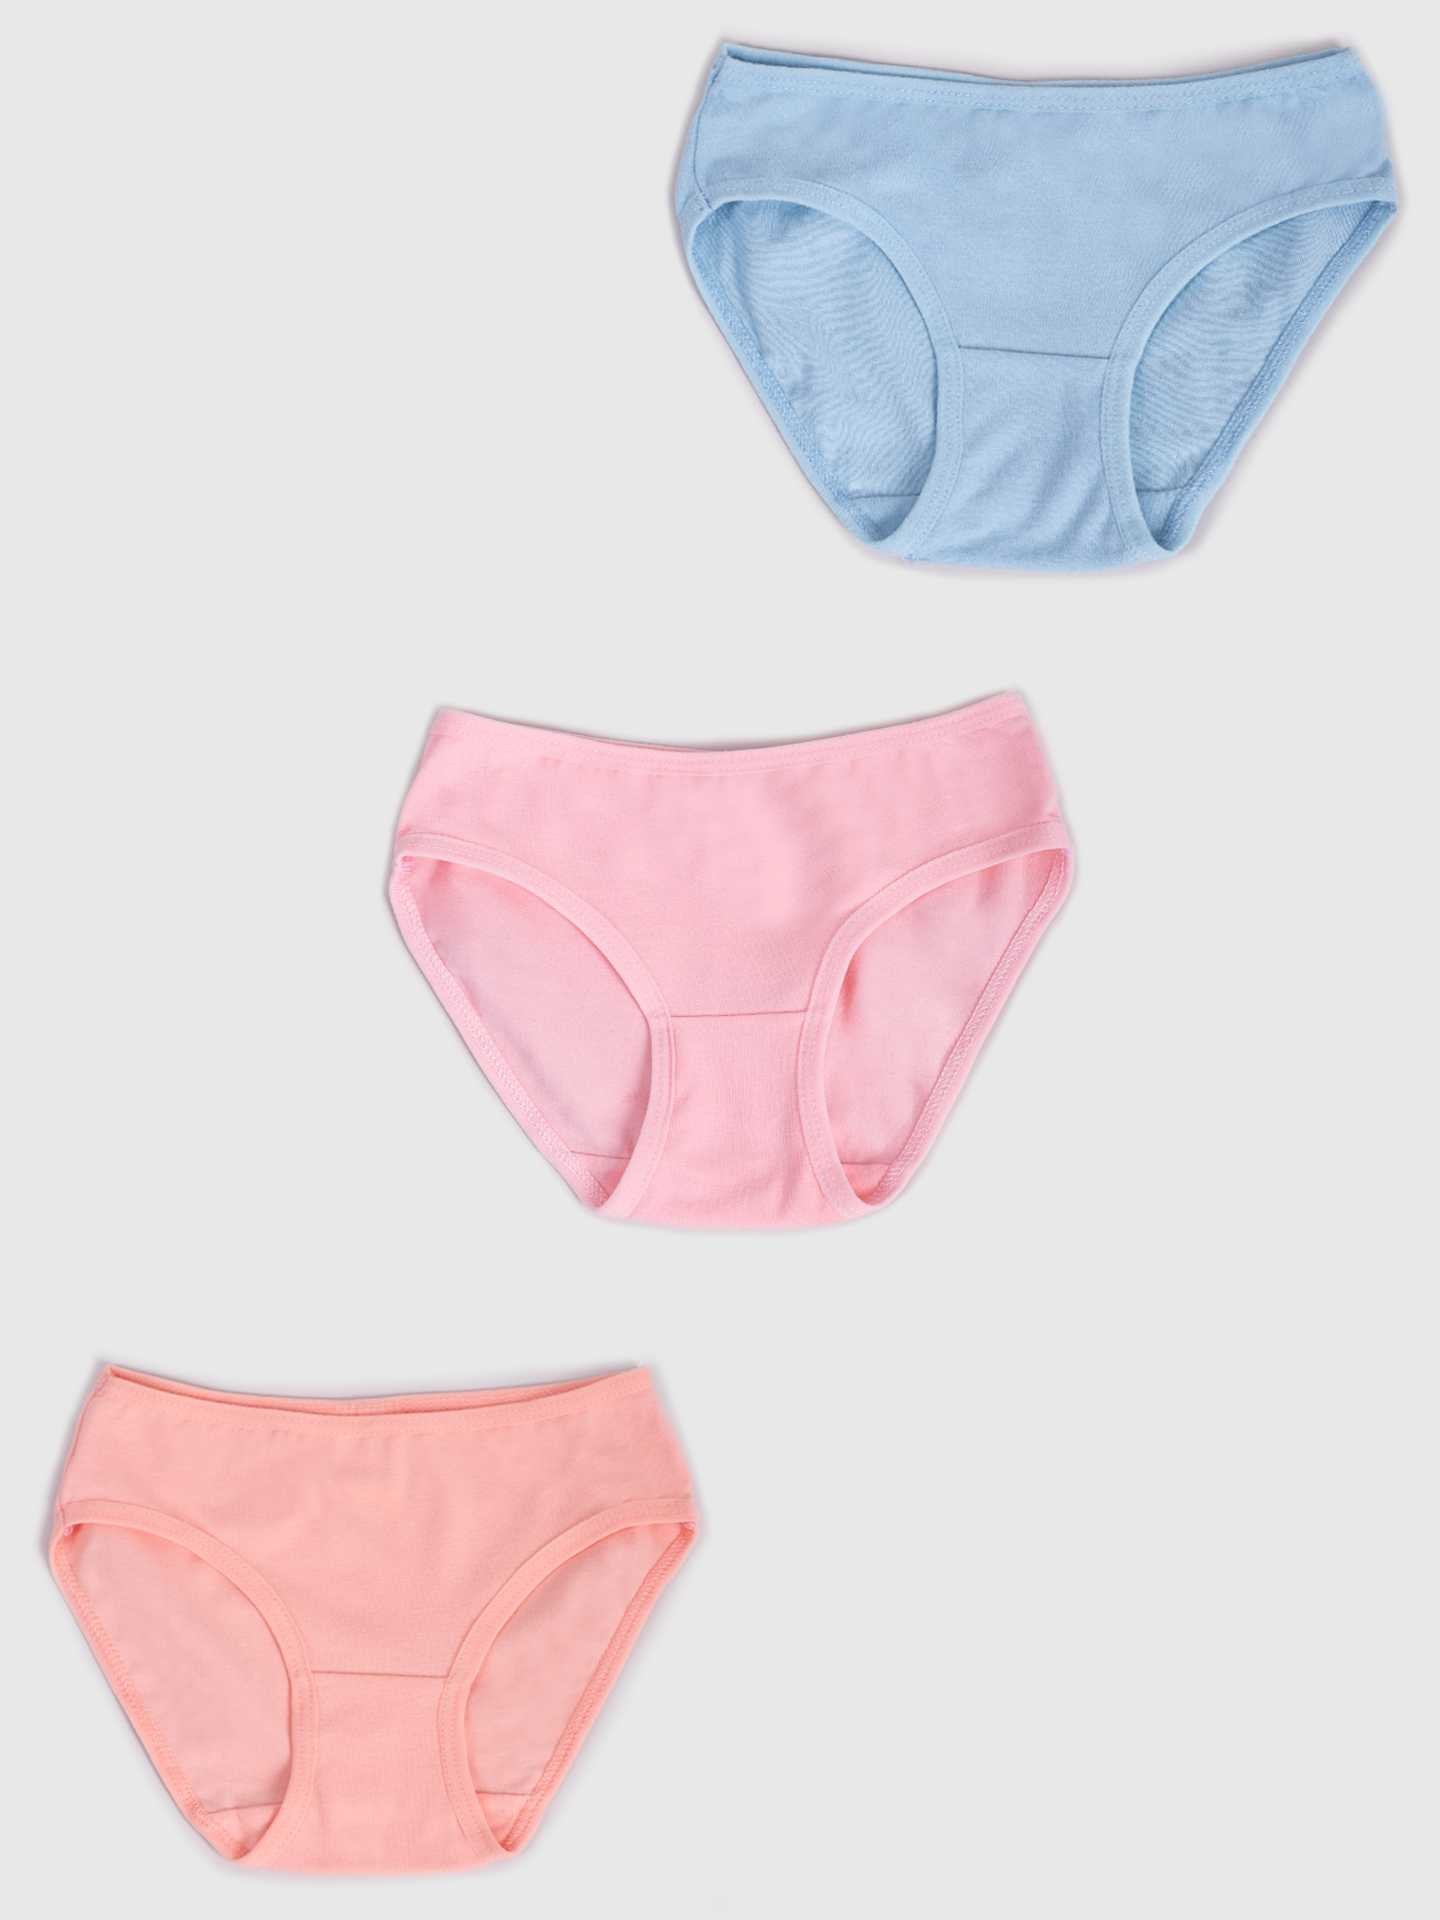 Levně Yoclub Kids's Cotton Girls' Briefs Underwear 3-Pack BMD-0036G-AA30-001